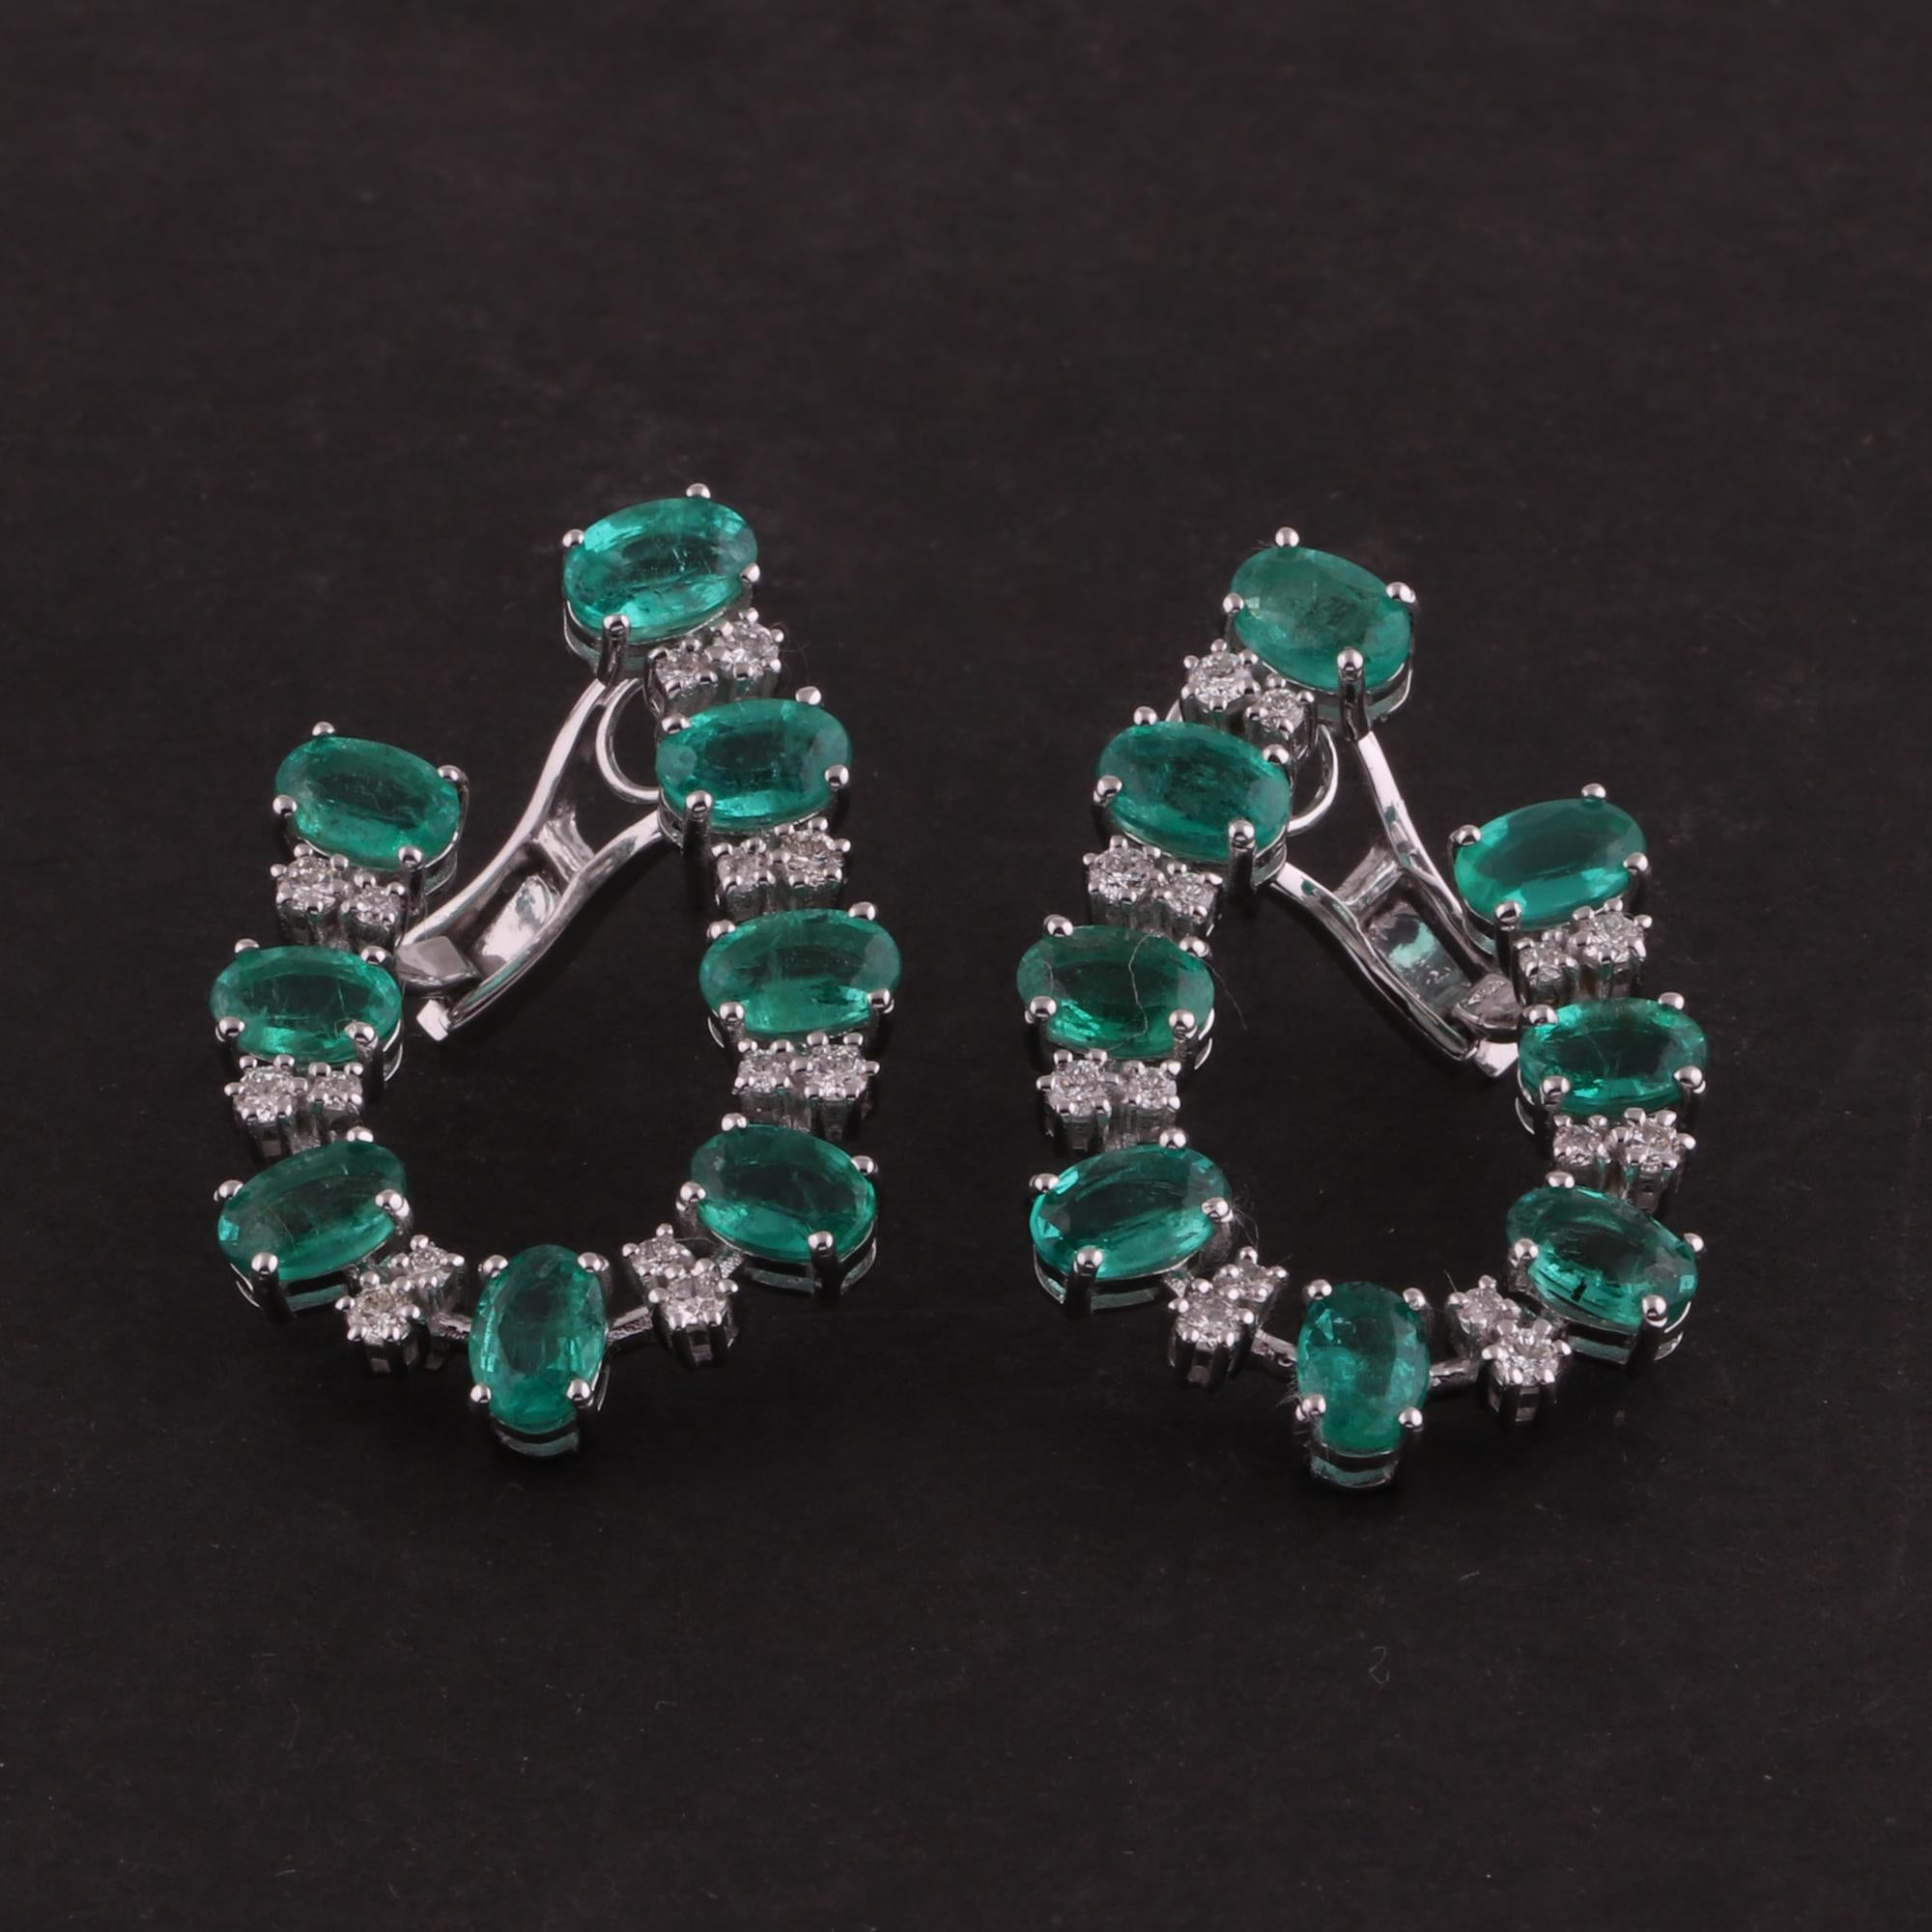 Oval Cut Oval Emerald Gemstone Earrings Diamond 18 Karat White Gold Handmade Fine Jewelry For Sale